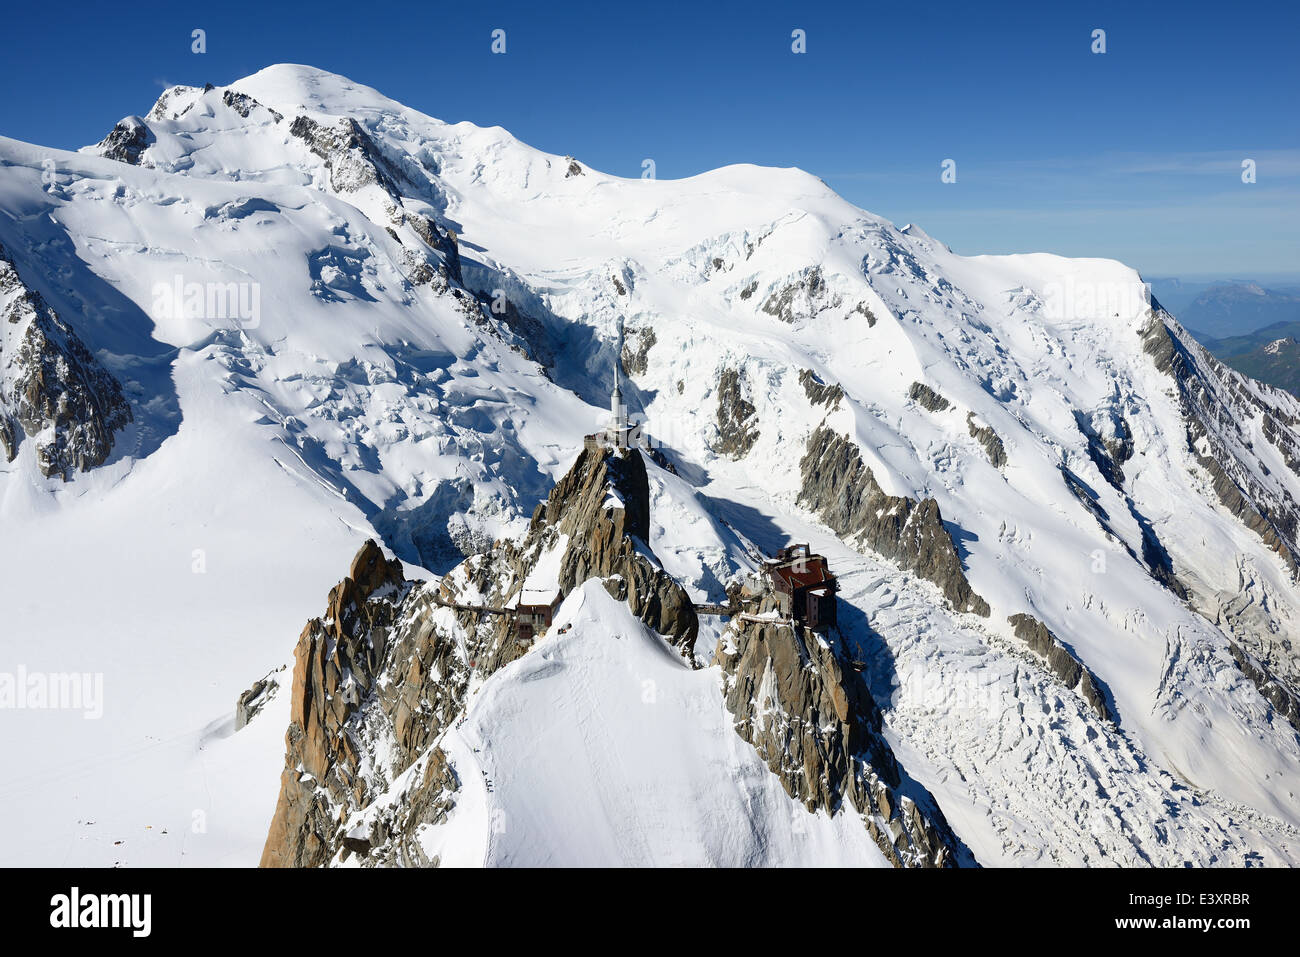 VUE AÉRIENNE.Aiguille du midi (altitude : 3842m) et Mont-blanc (altitude : 4810m).Chamonix Mont-blanc, haute-Savoie, Auvergne-Rhône-Alpes, France. Banque D'Images